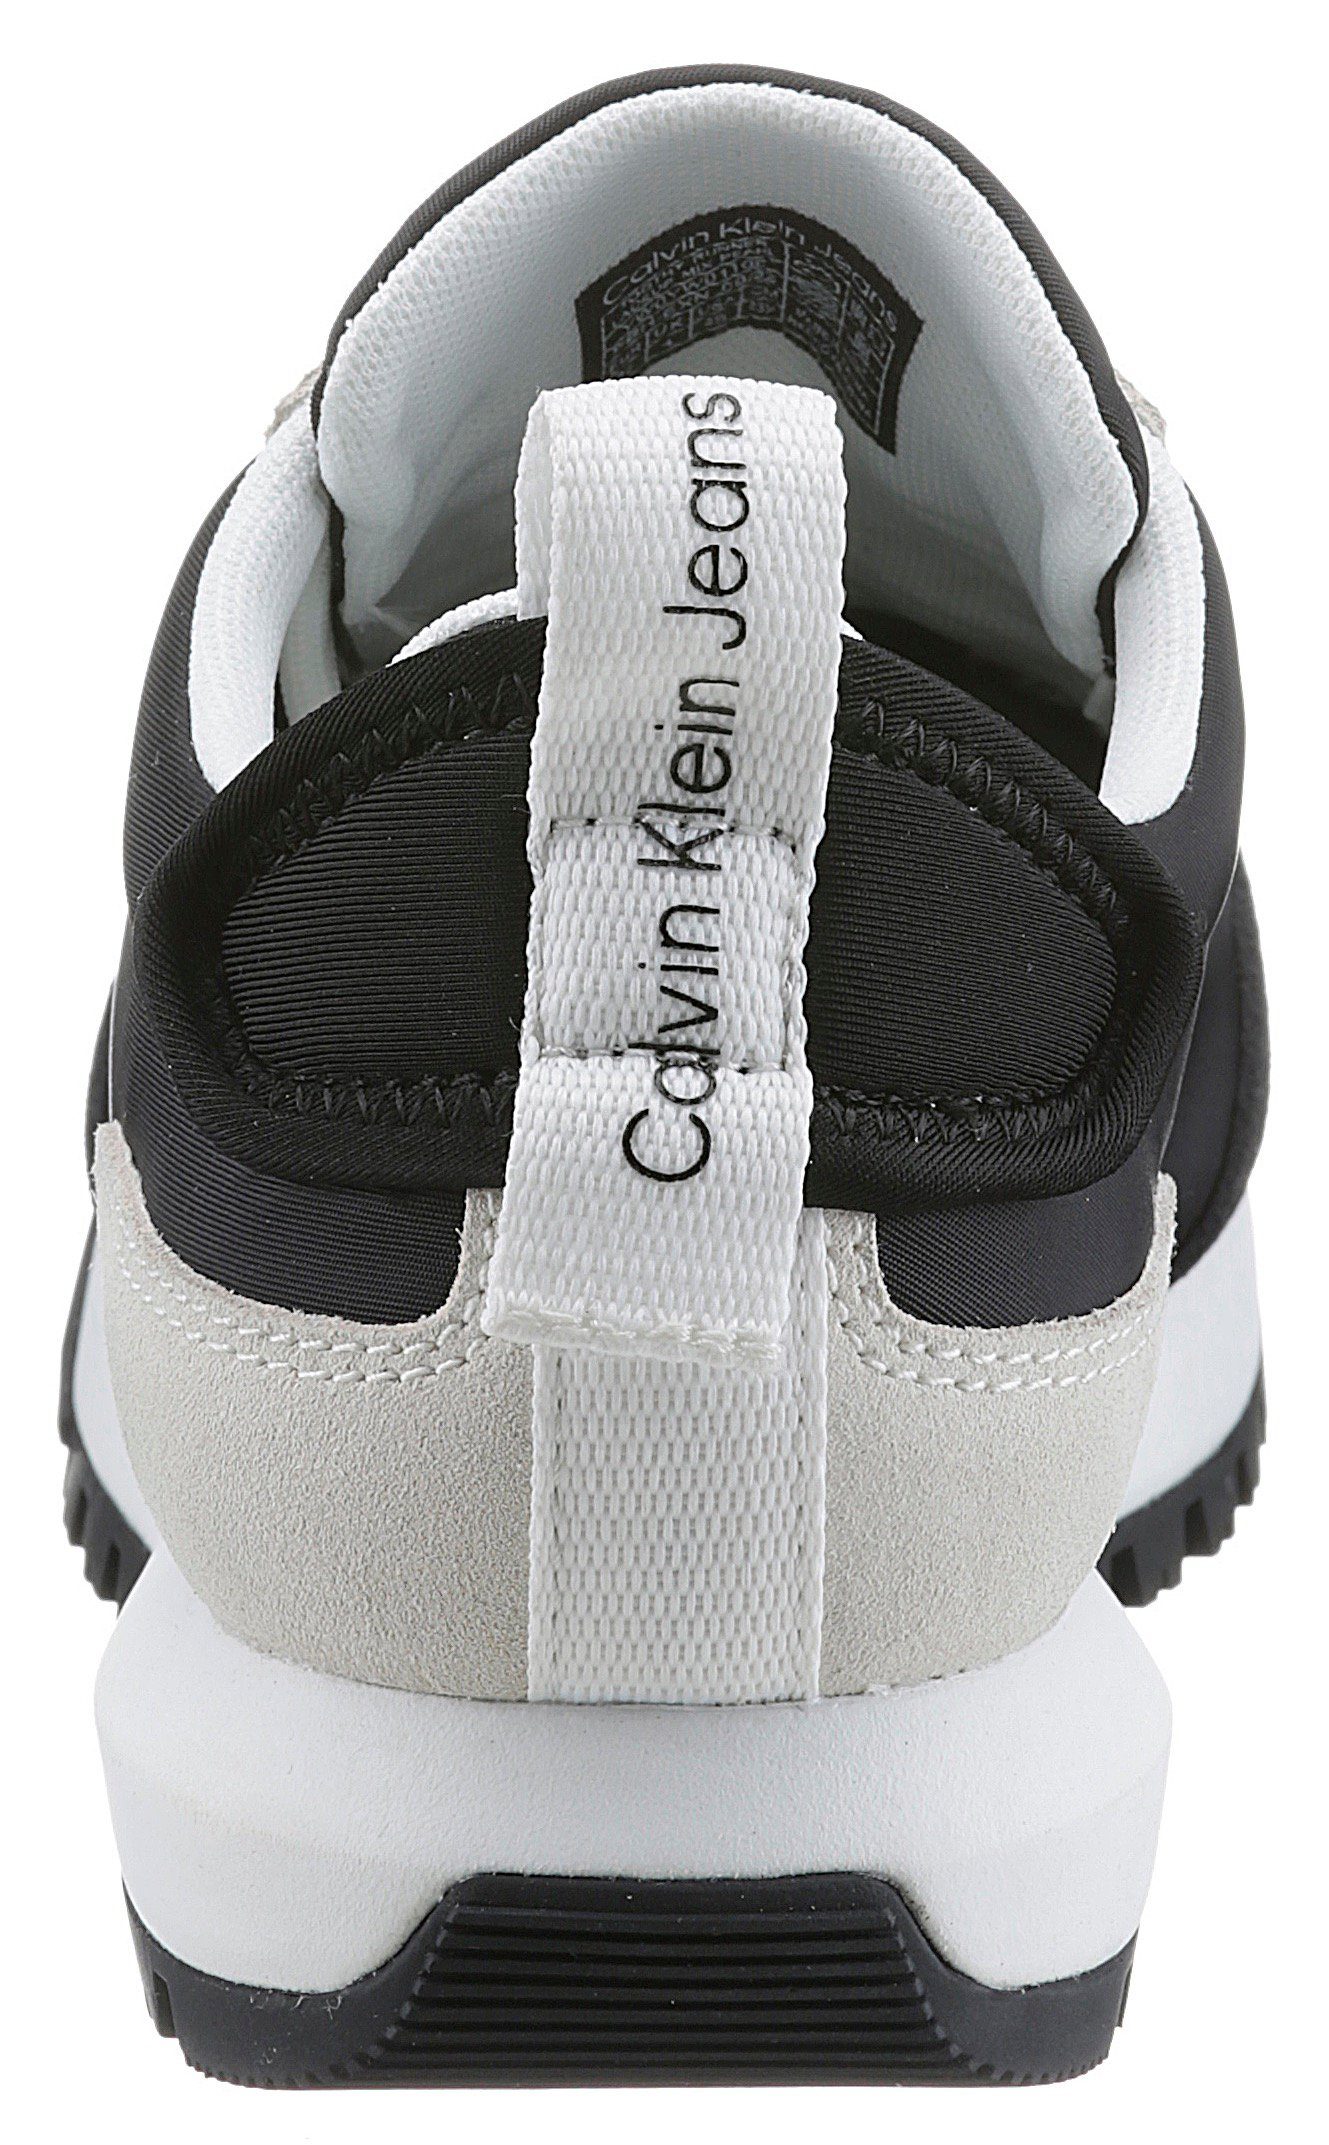 Jeans Sneaker mit TOOTHY schwarz-weiß PEARL Klein LACEUP MIX Profilsohle Calvin RUNNER